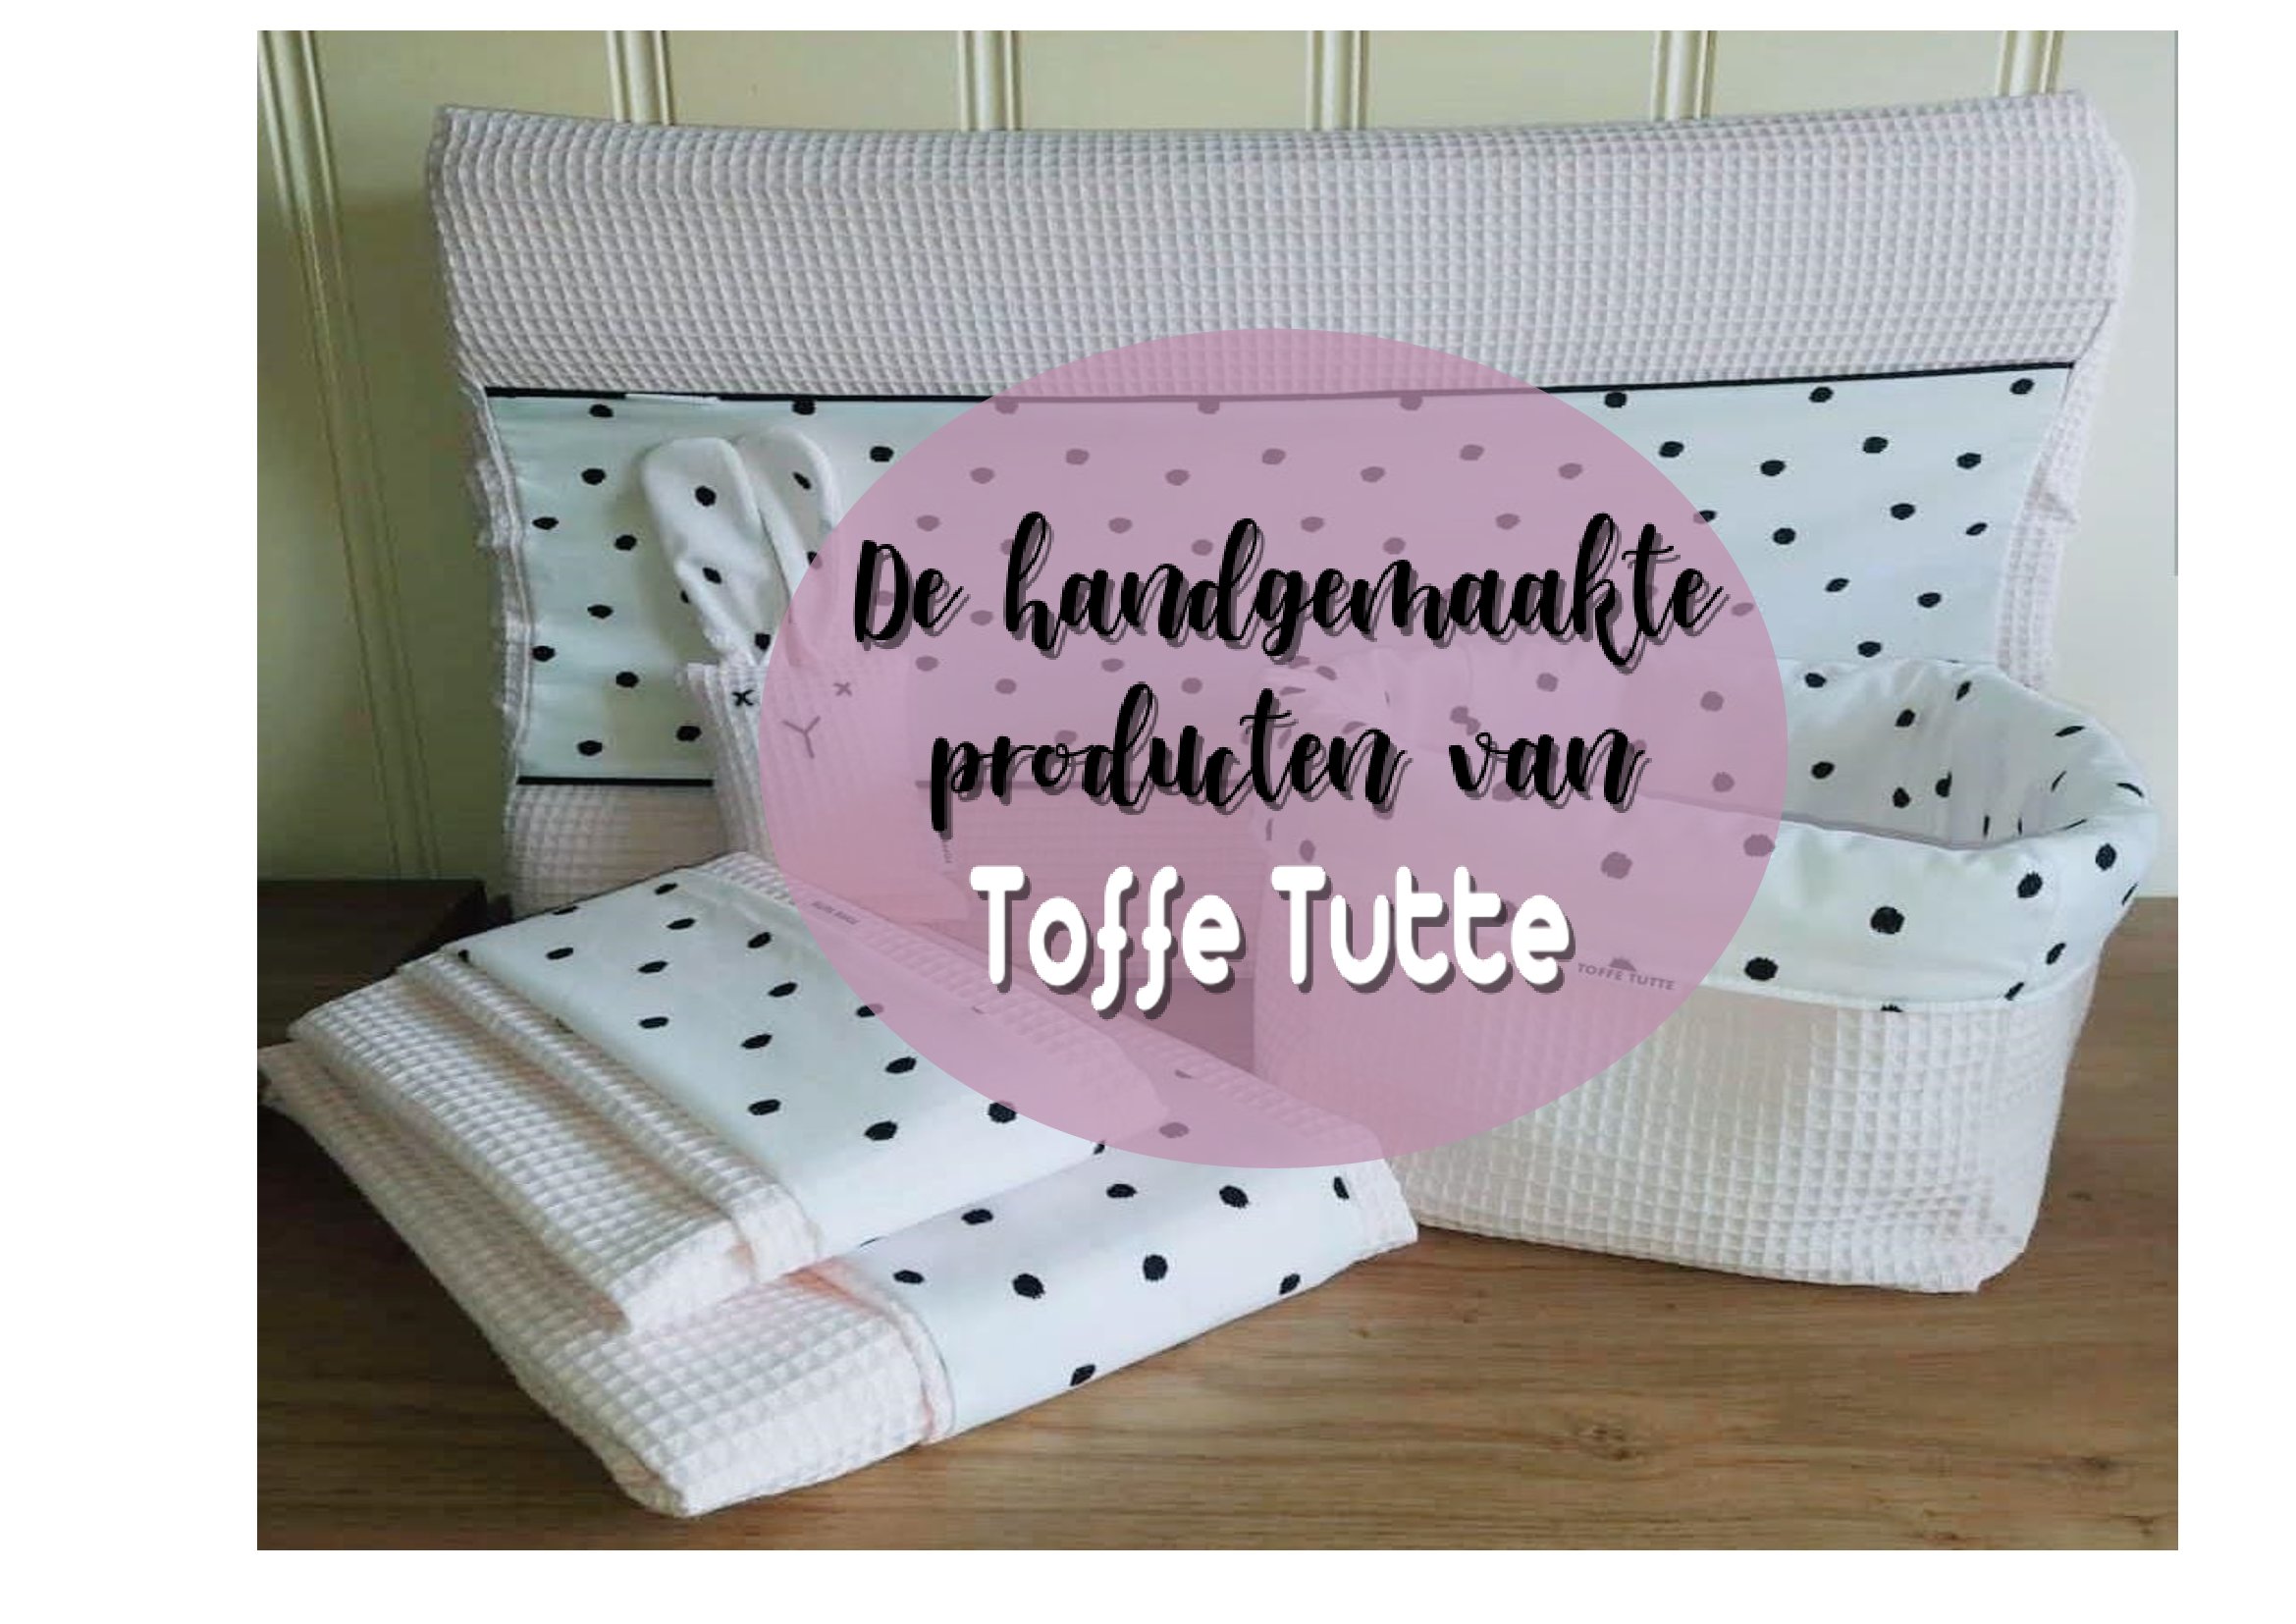 De handgemaakte producten van…Toffe Tutte